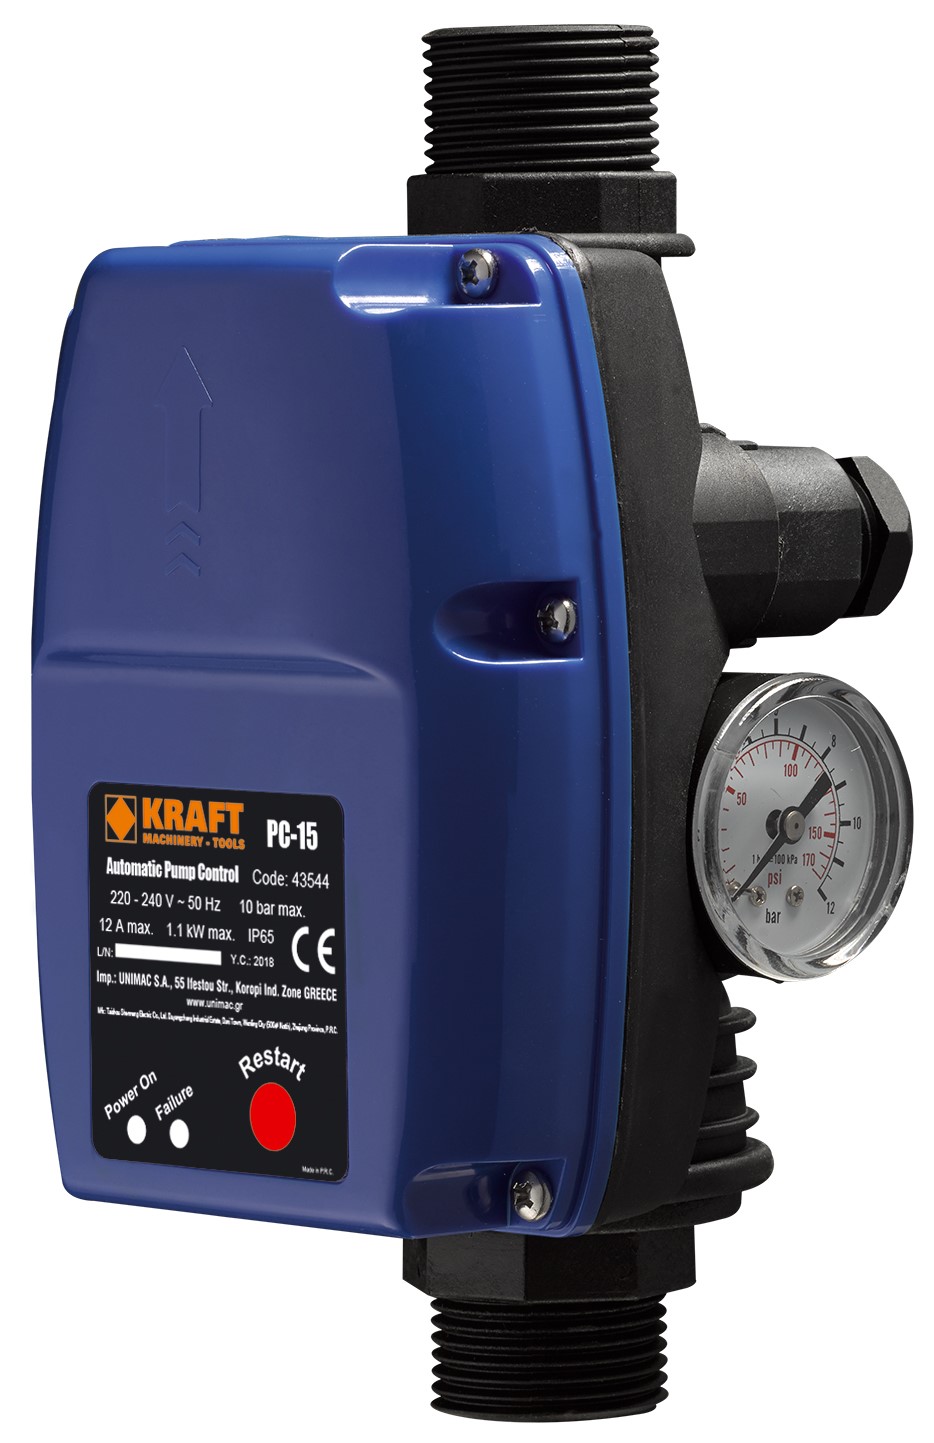 Ηλεκτρονικός ελεγκτής πίεσης νερού 1,0-3,5 Bar BR-15 KRAFT